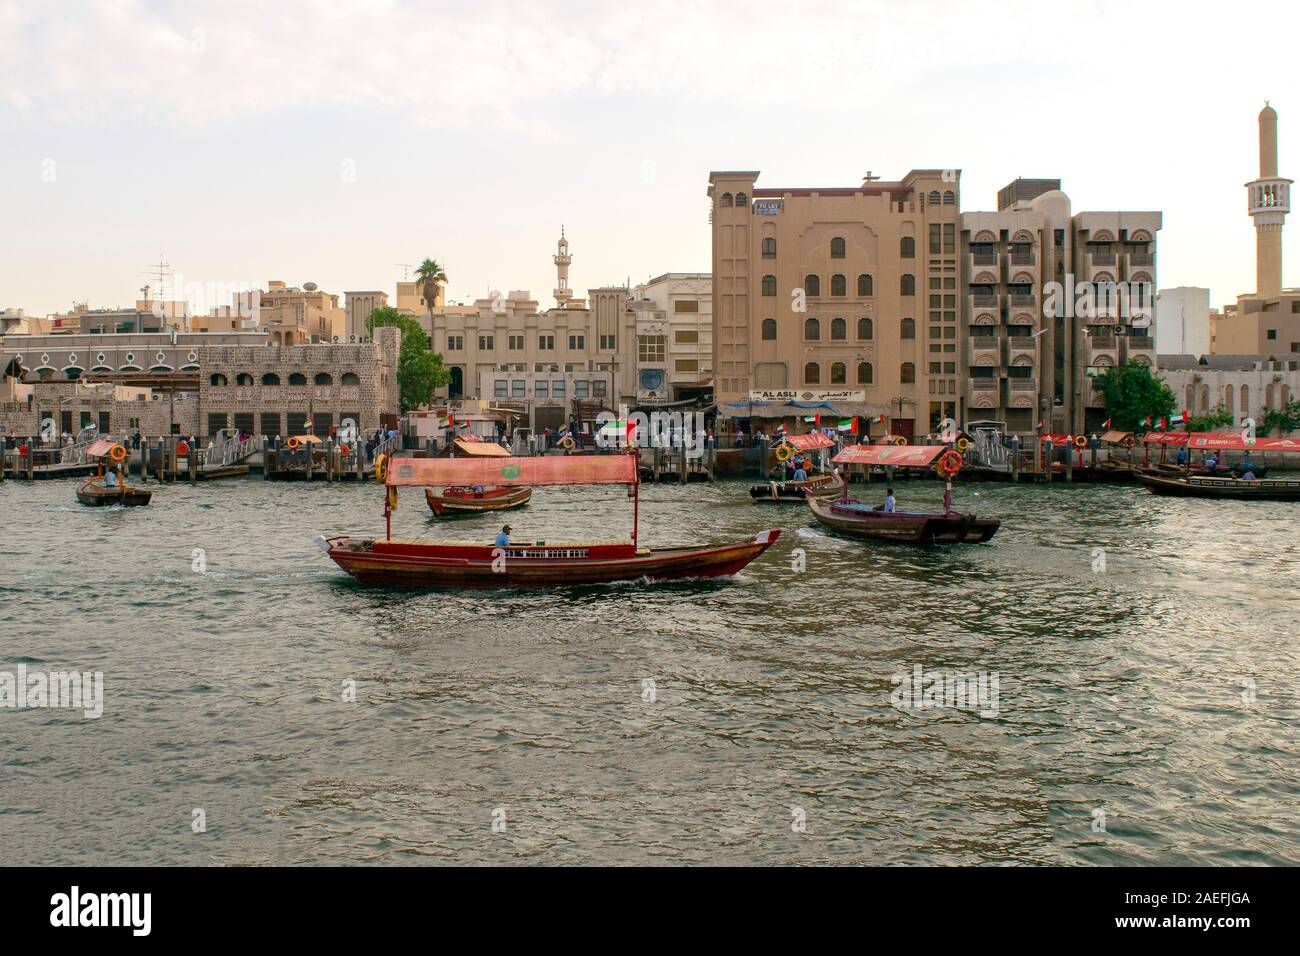 Dubaï/Émirats arabes unis - 9 novembre, 2019 : affichage de la zone de la vieille ville de Dubaï avec RTA 3235 bateaux sur Dubai Creek river. Bur Dubai, les vieux bateaux traditionnels avec les touristes. Wate Banque D'Images